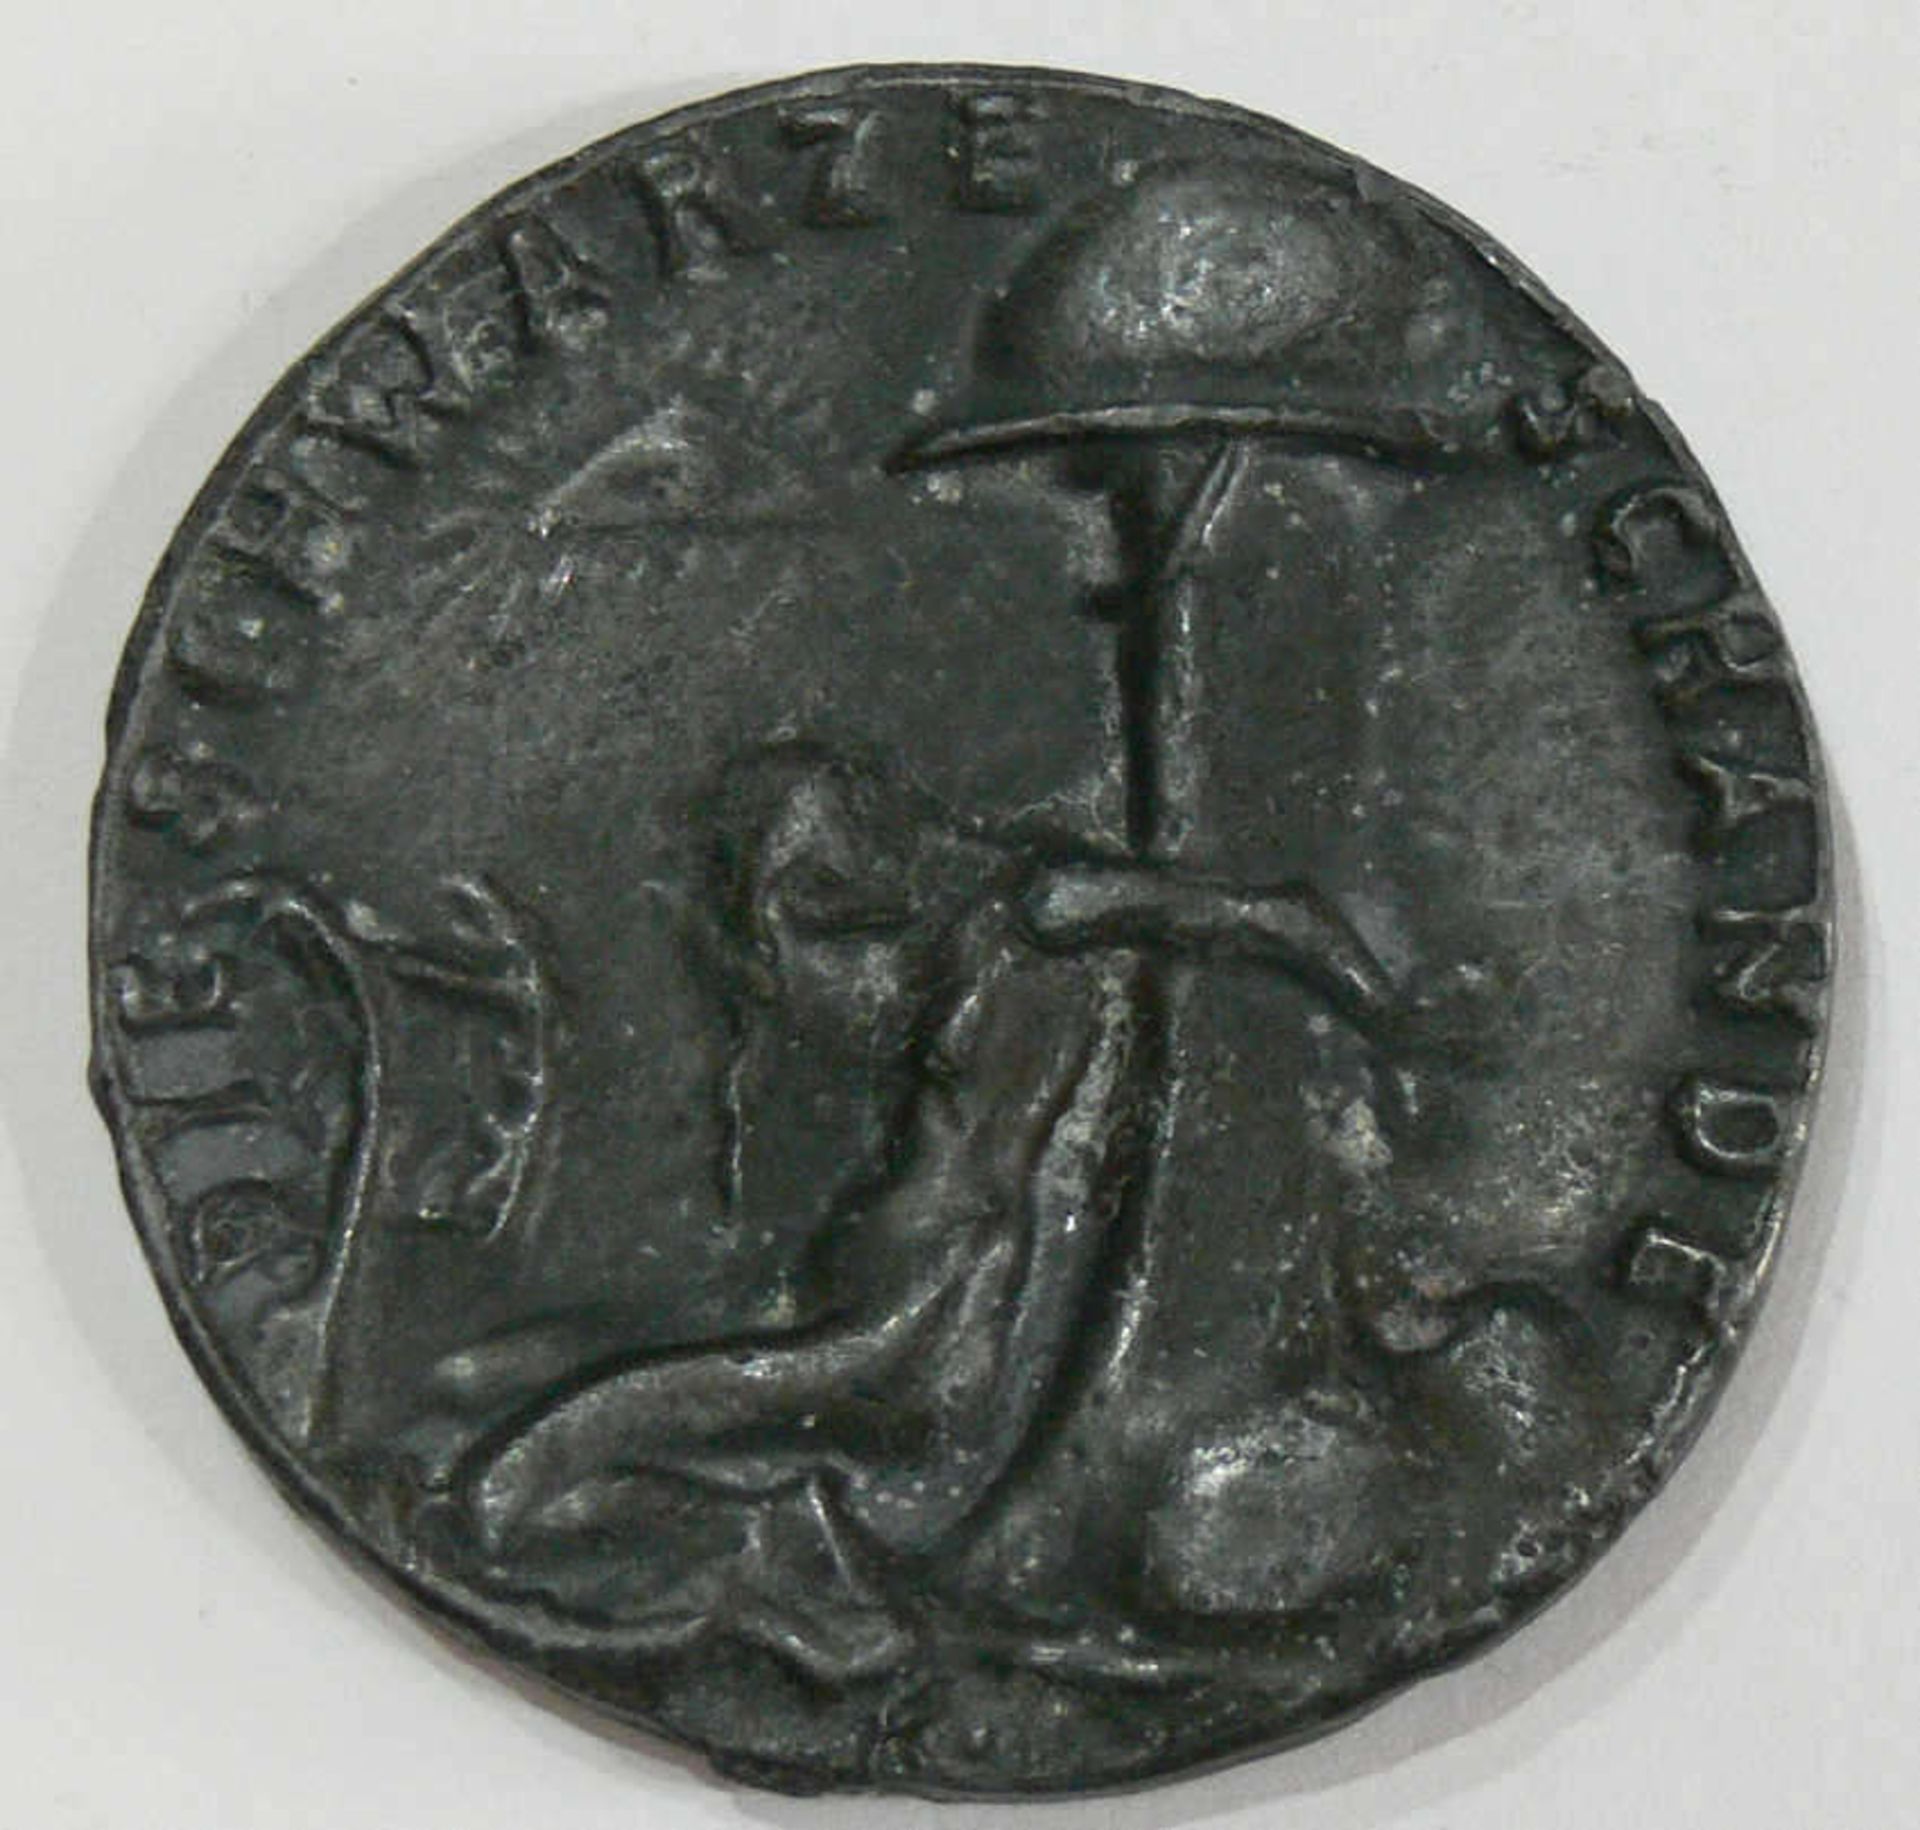 Medaille 1920 von Karl Götz "Die Wacht am Rhein". Rückseite: "Die schwarze Schande". Bronzeguss. - Bild 2 aus 2